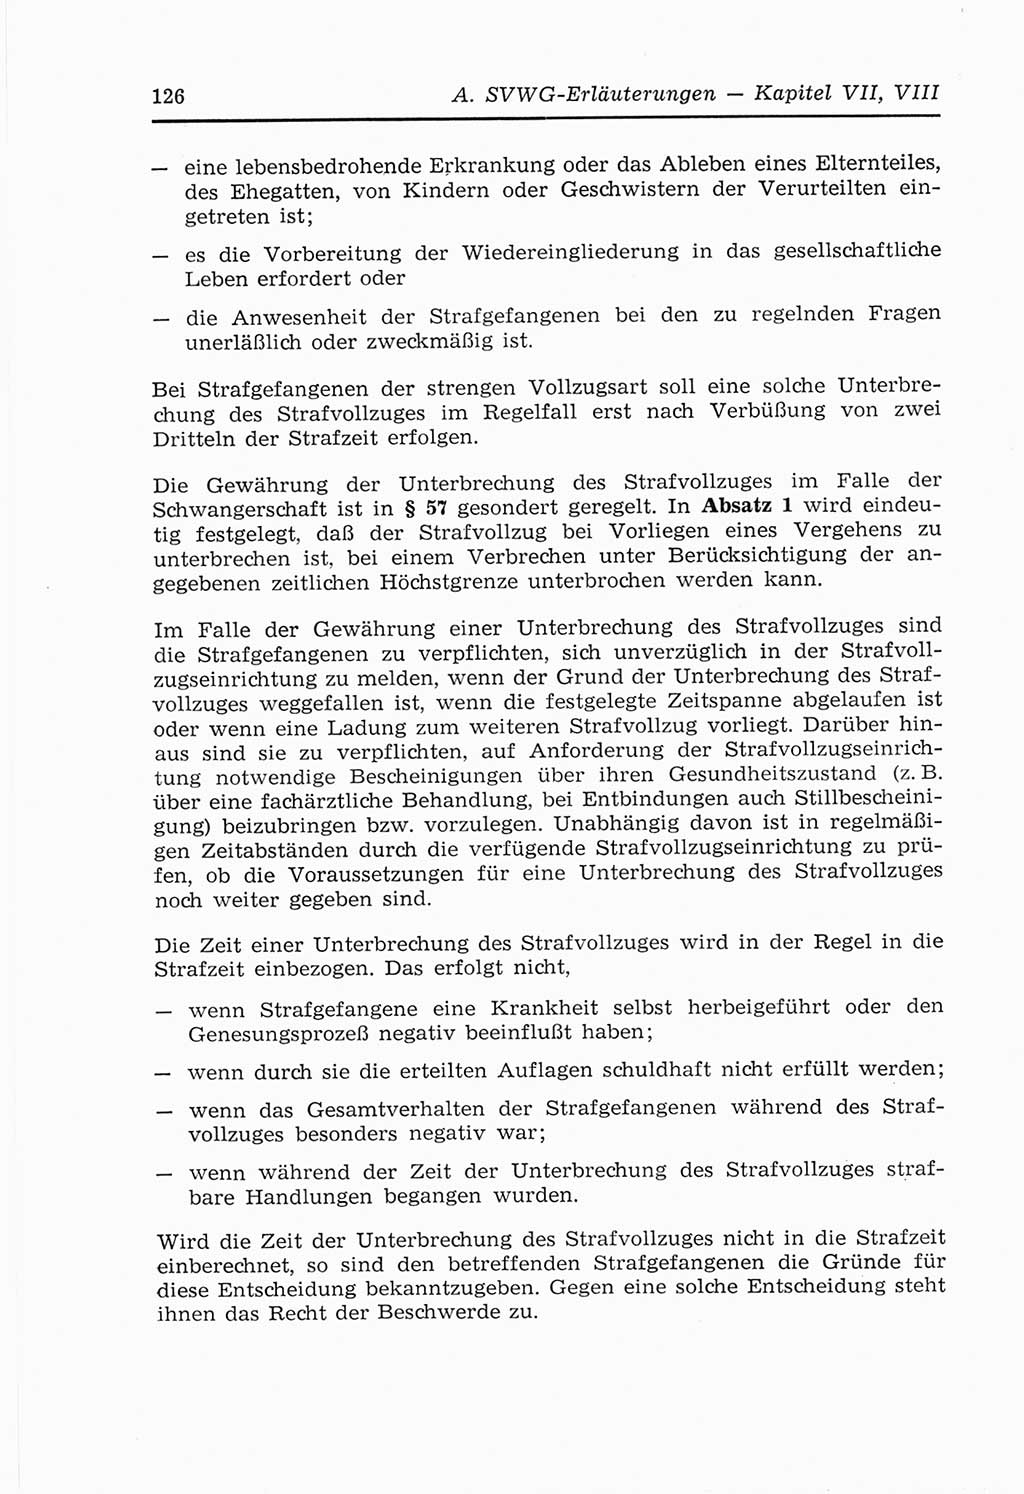 Strafvollzugs- und Wiedereingliederungsgesetz (SVWG) der Deutschen Demokratischen Republik (DDR) 1968, Seite 126 (SVWG DDR 1968, S. 126)